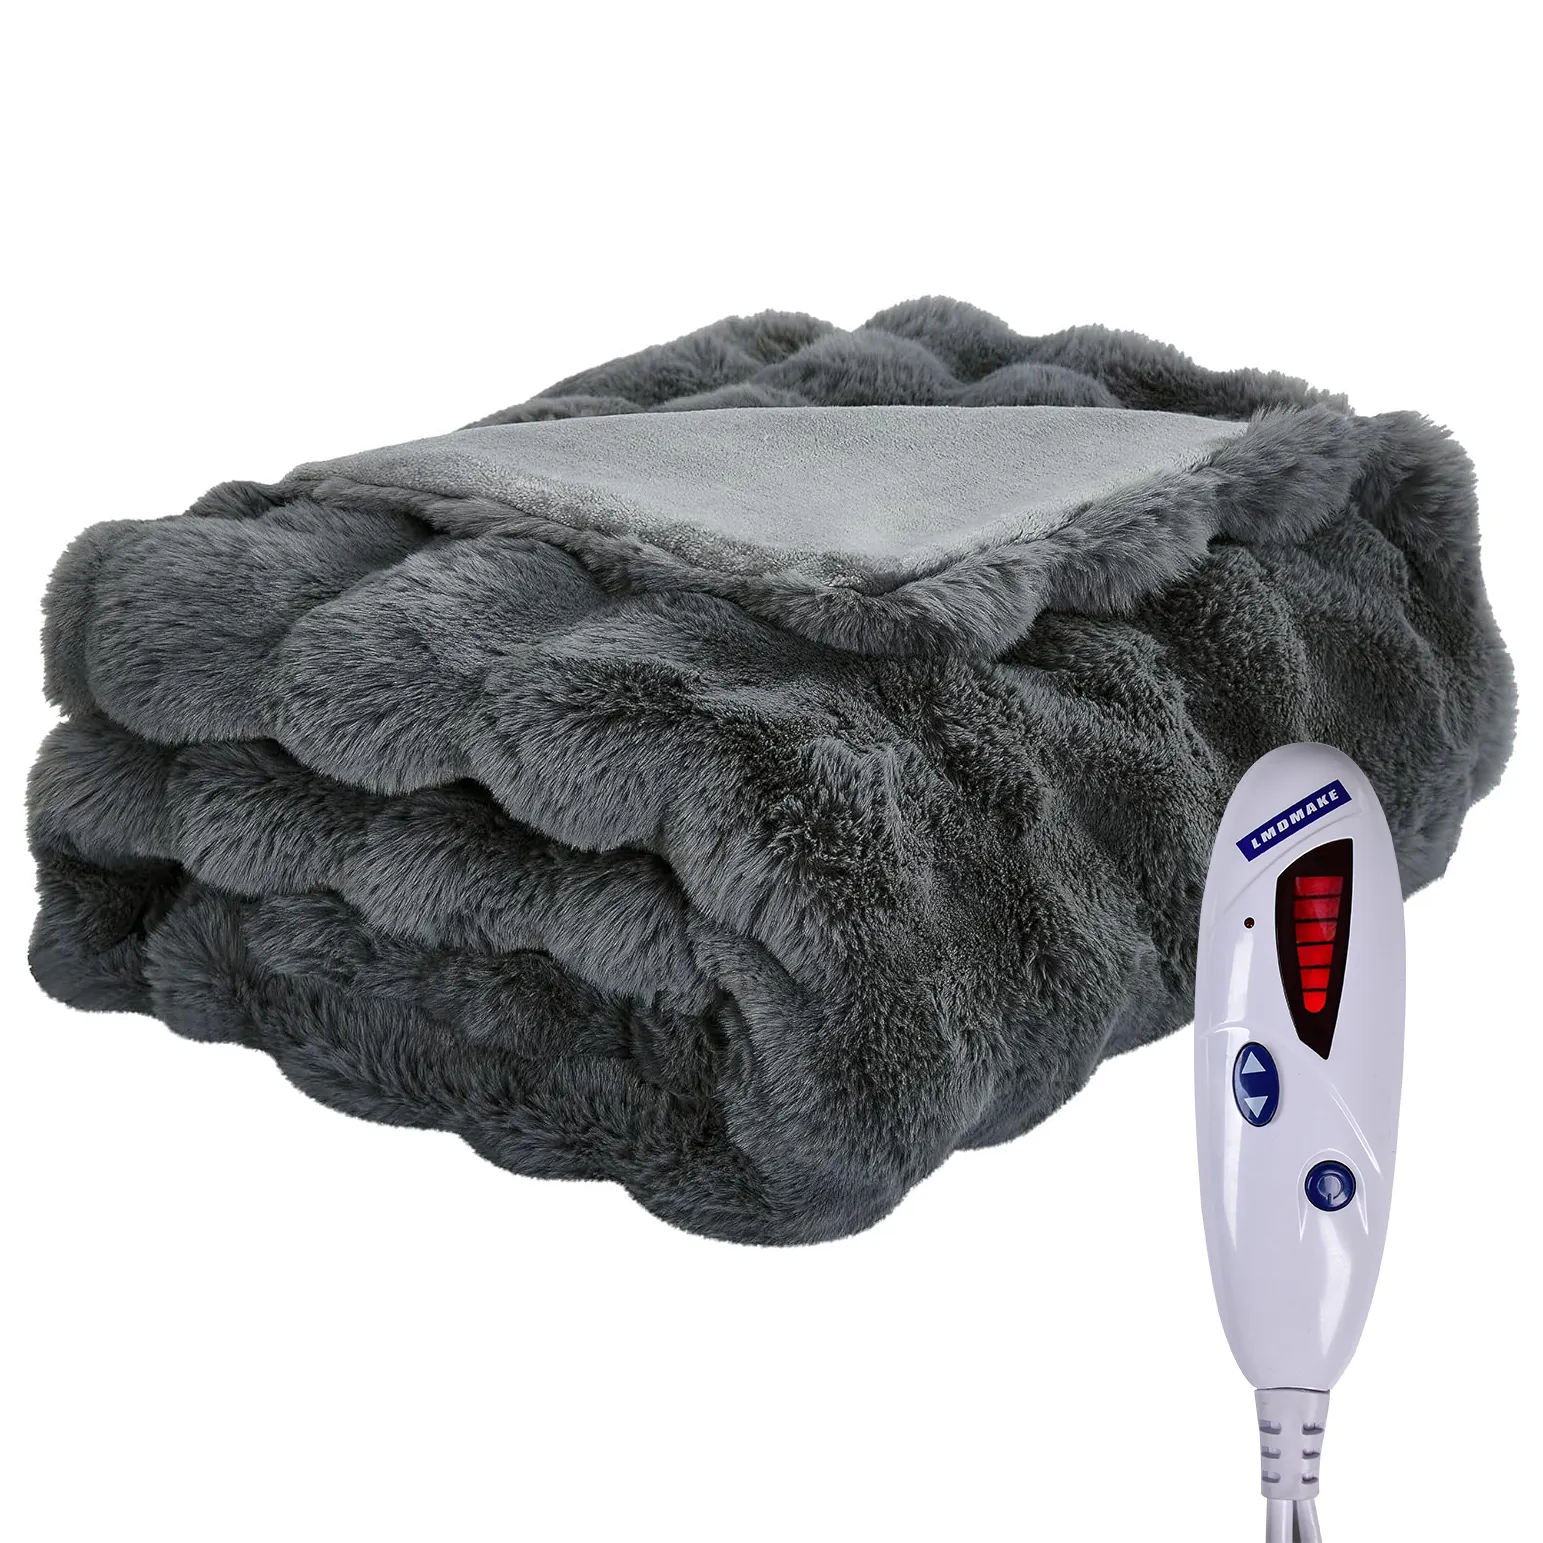 Selimut elektrik berbulu halus panjang bulu palsu selimut hangat pemanasan cepat selimut hangat tebal halus 50*60 inci